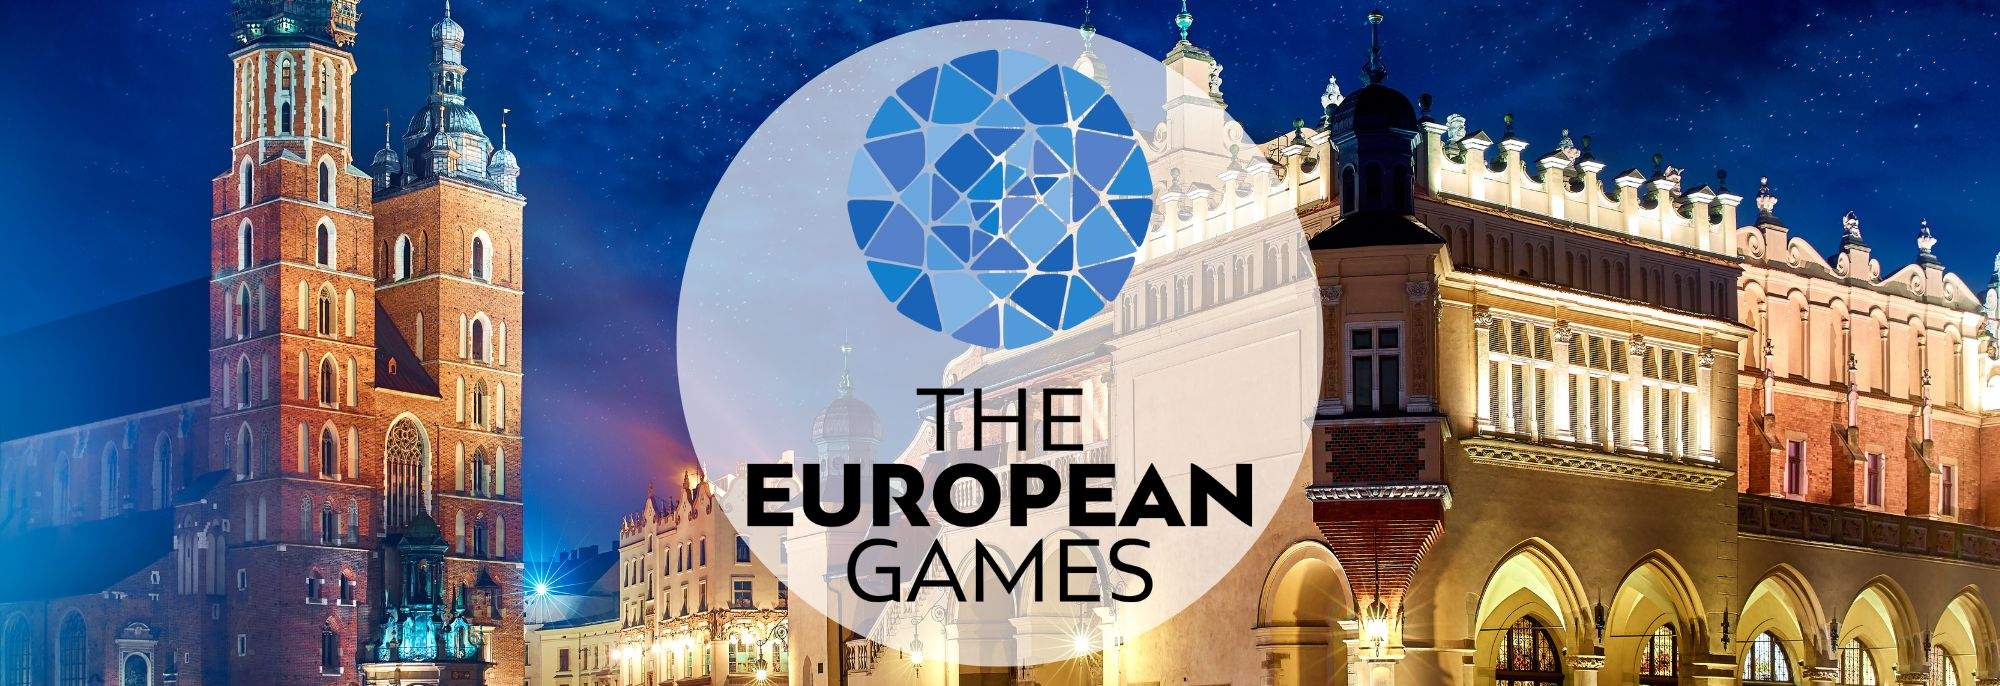 European Games 2023: Spotlight on Krakow